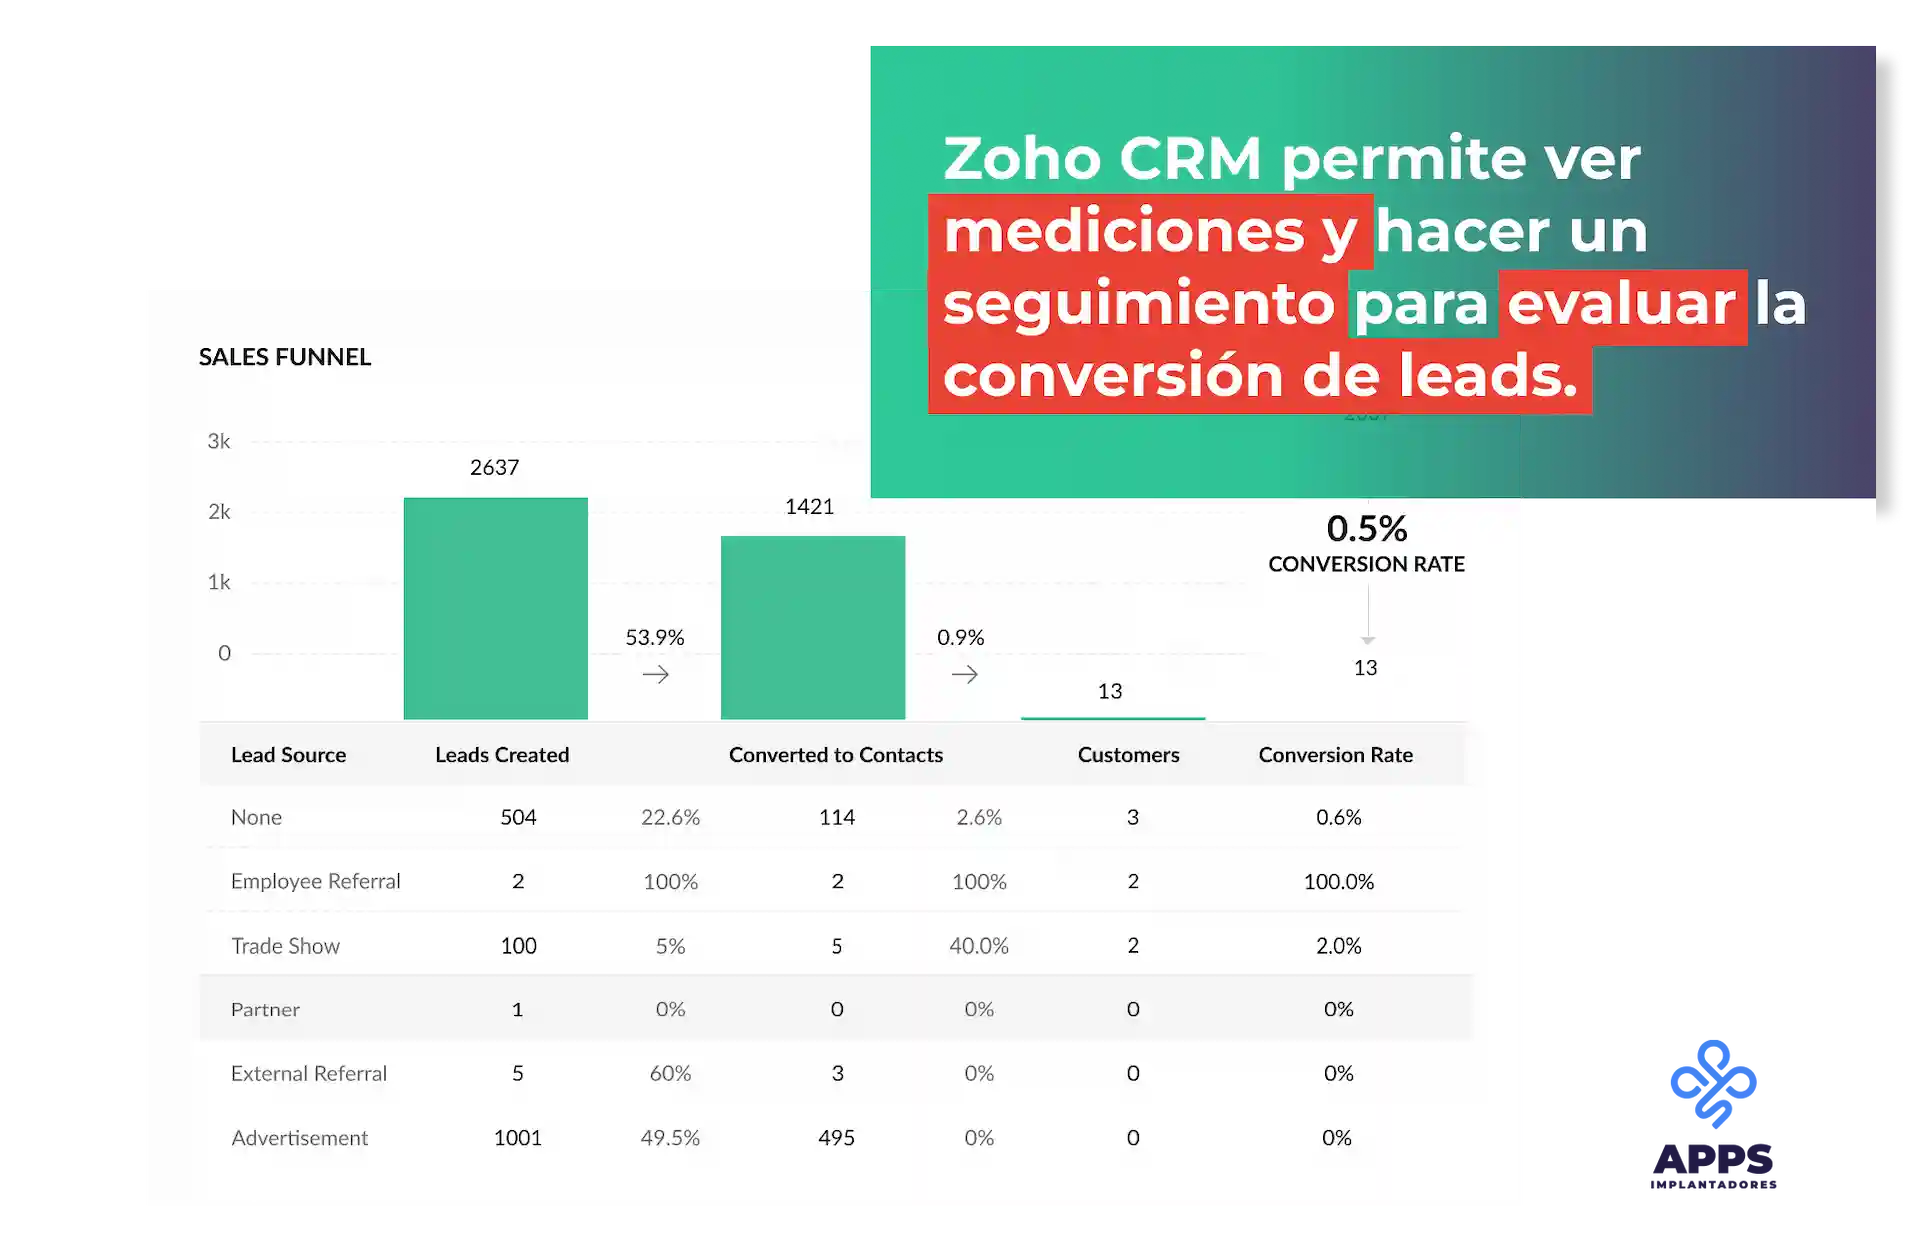 Zoho CRM permite ver mediciones y hacer un seguimiento para evaluar la conversión de leads